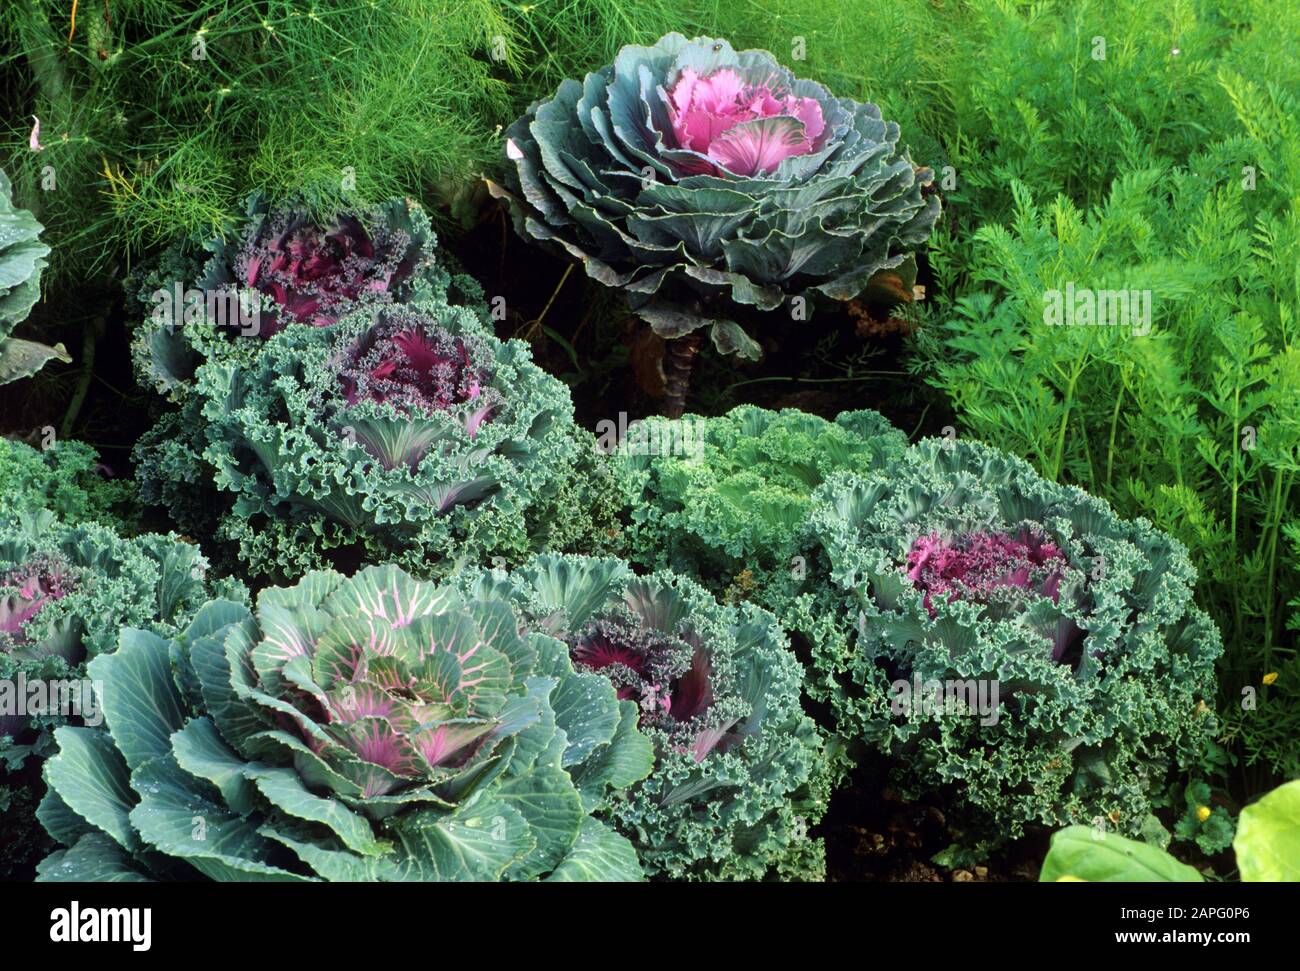 Le kale oromental (Brassica oleracea) en automne Banque D'Images